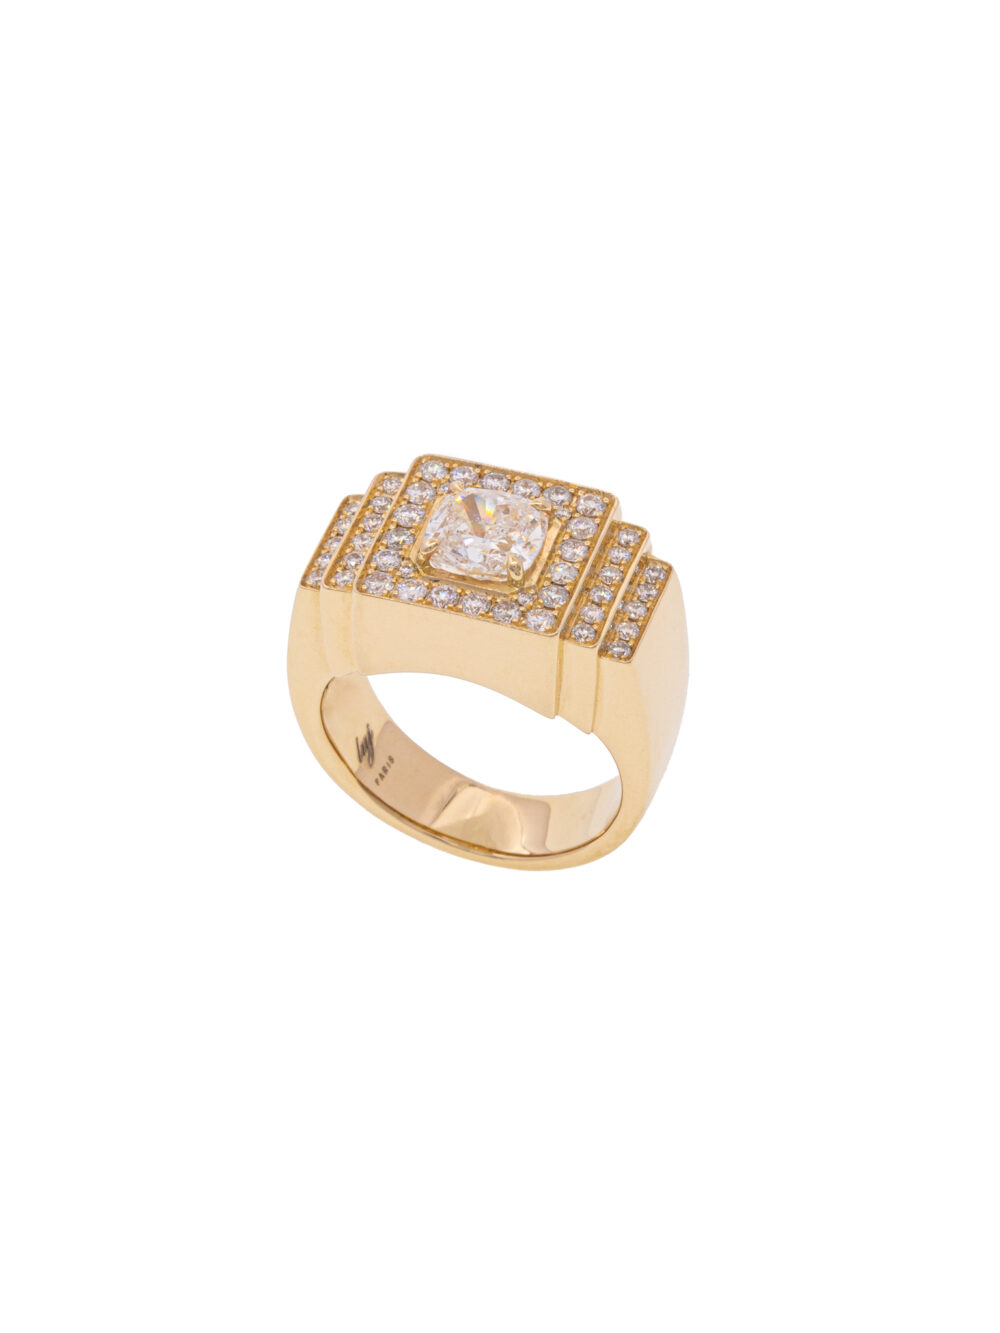 madame-diamond-ring-luj-paris-fine-jewelry